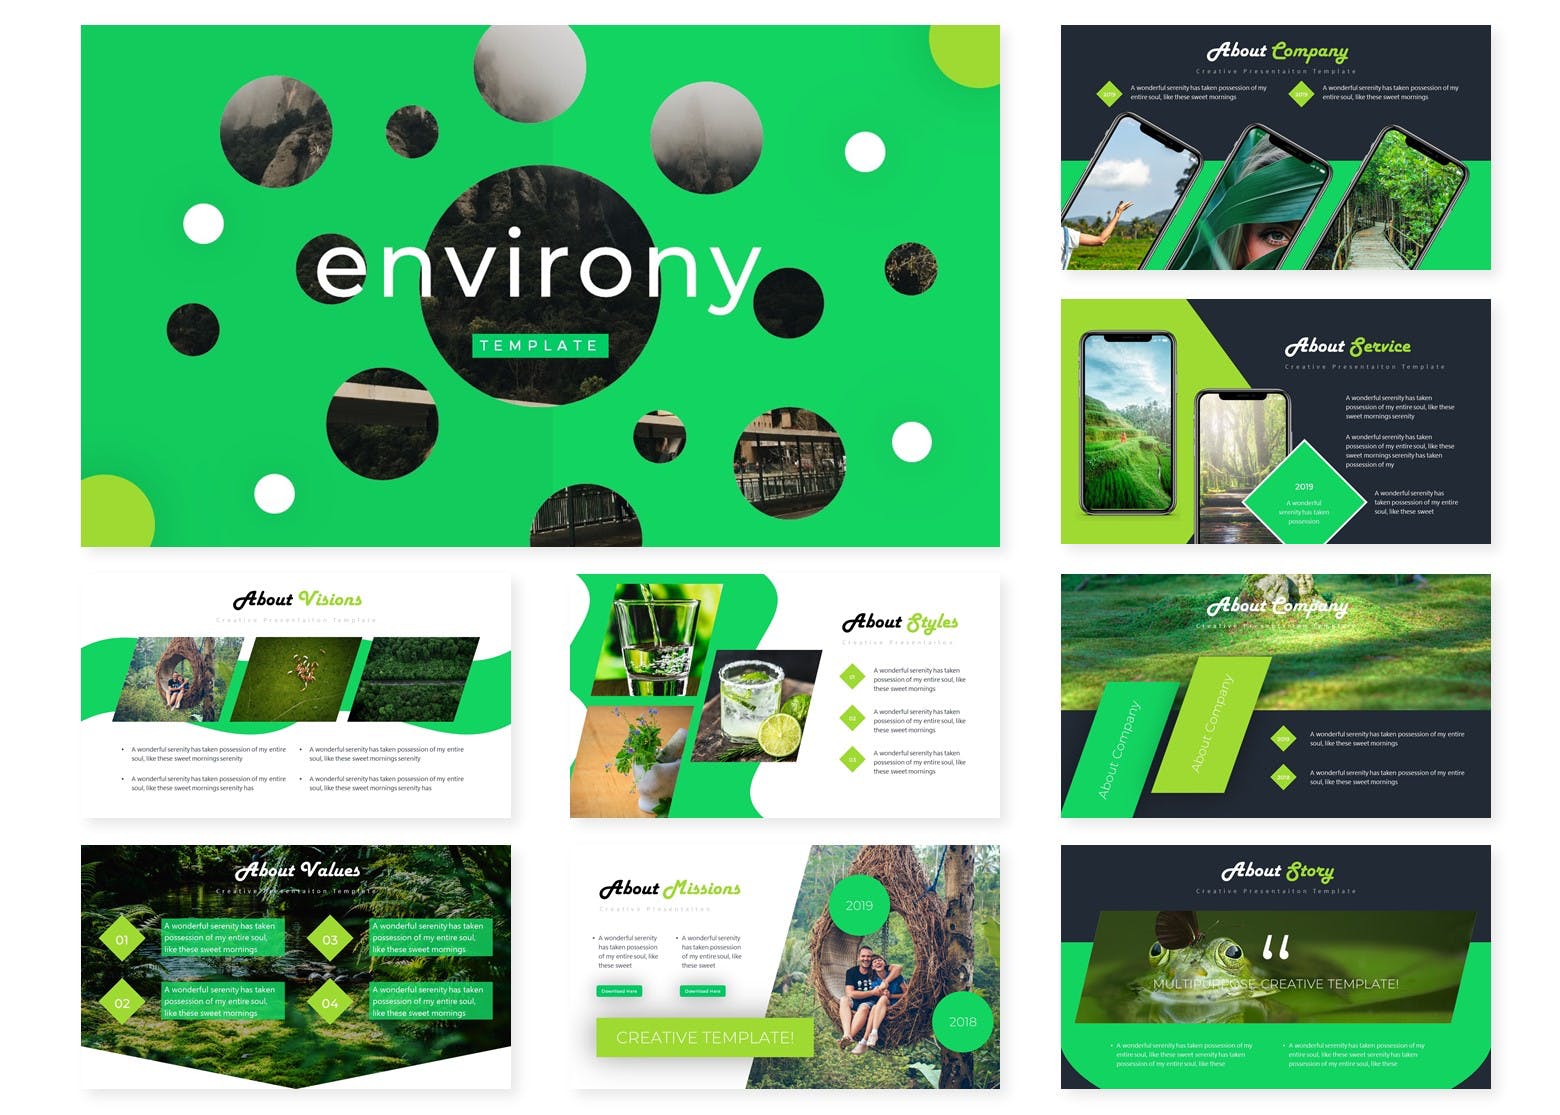 爱护保护环境主题PPT幻灯片设计模板 Environy | Powerpoint Template插图(1)